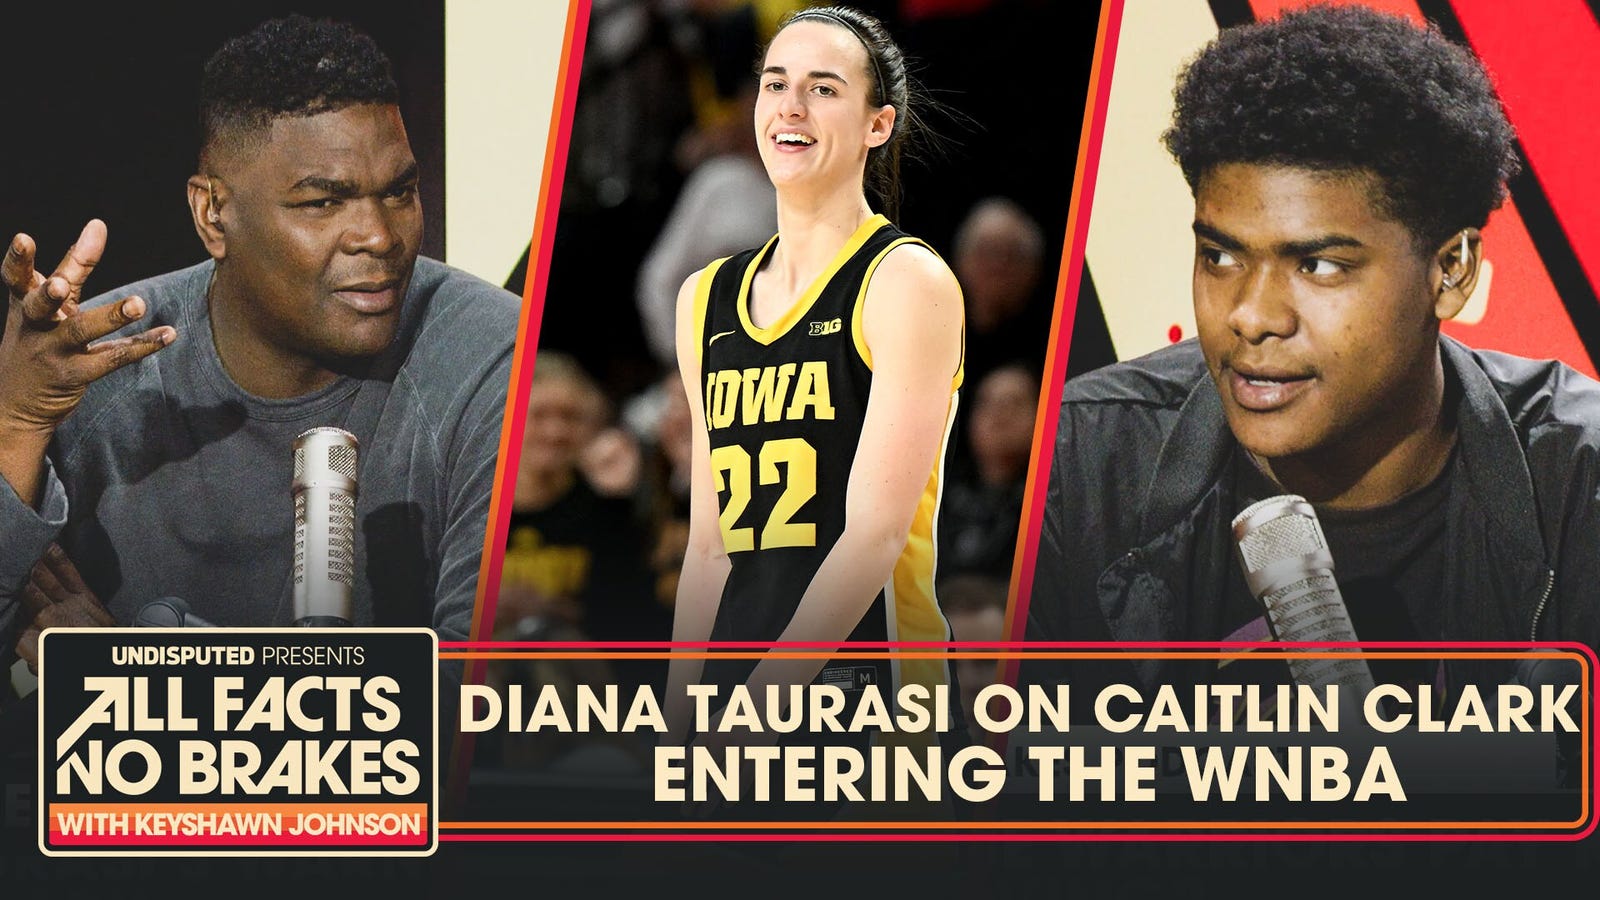 Diana Taurasi warns Caitlin Clark "reality is coming" ahead of WNBA Draft